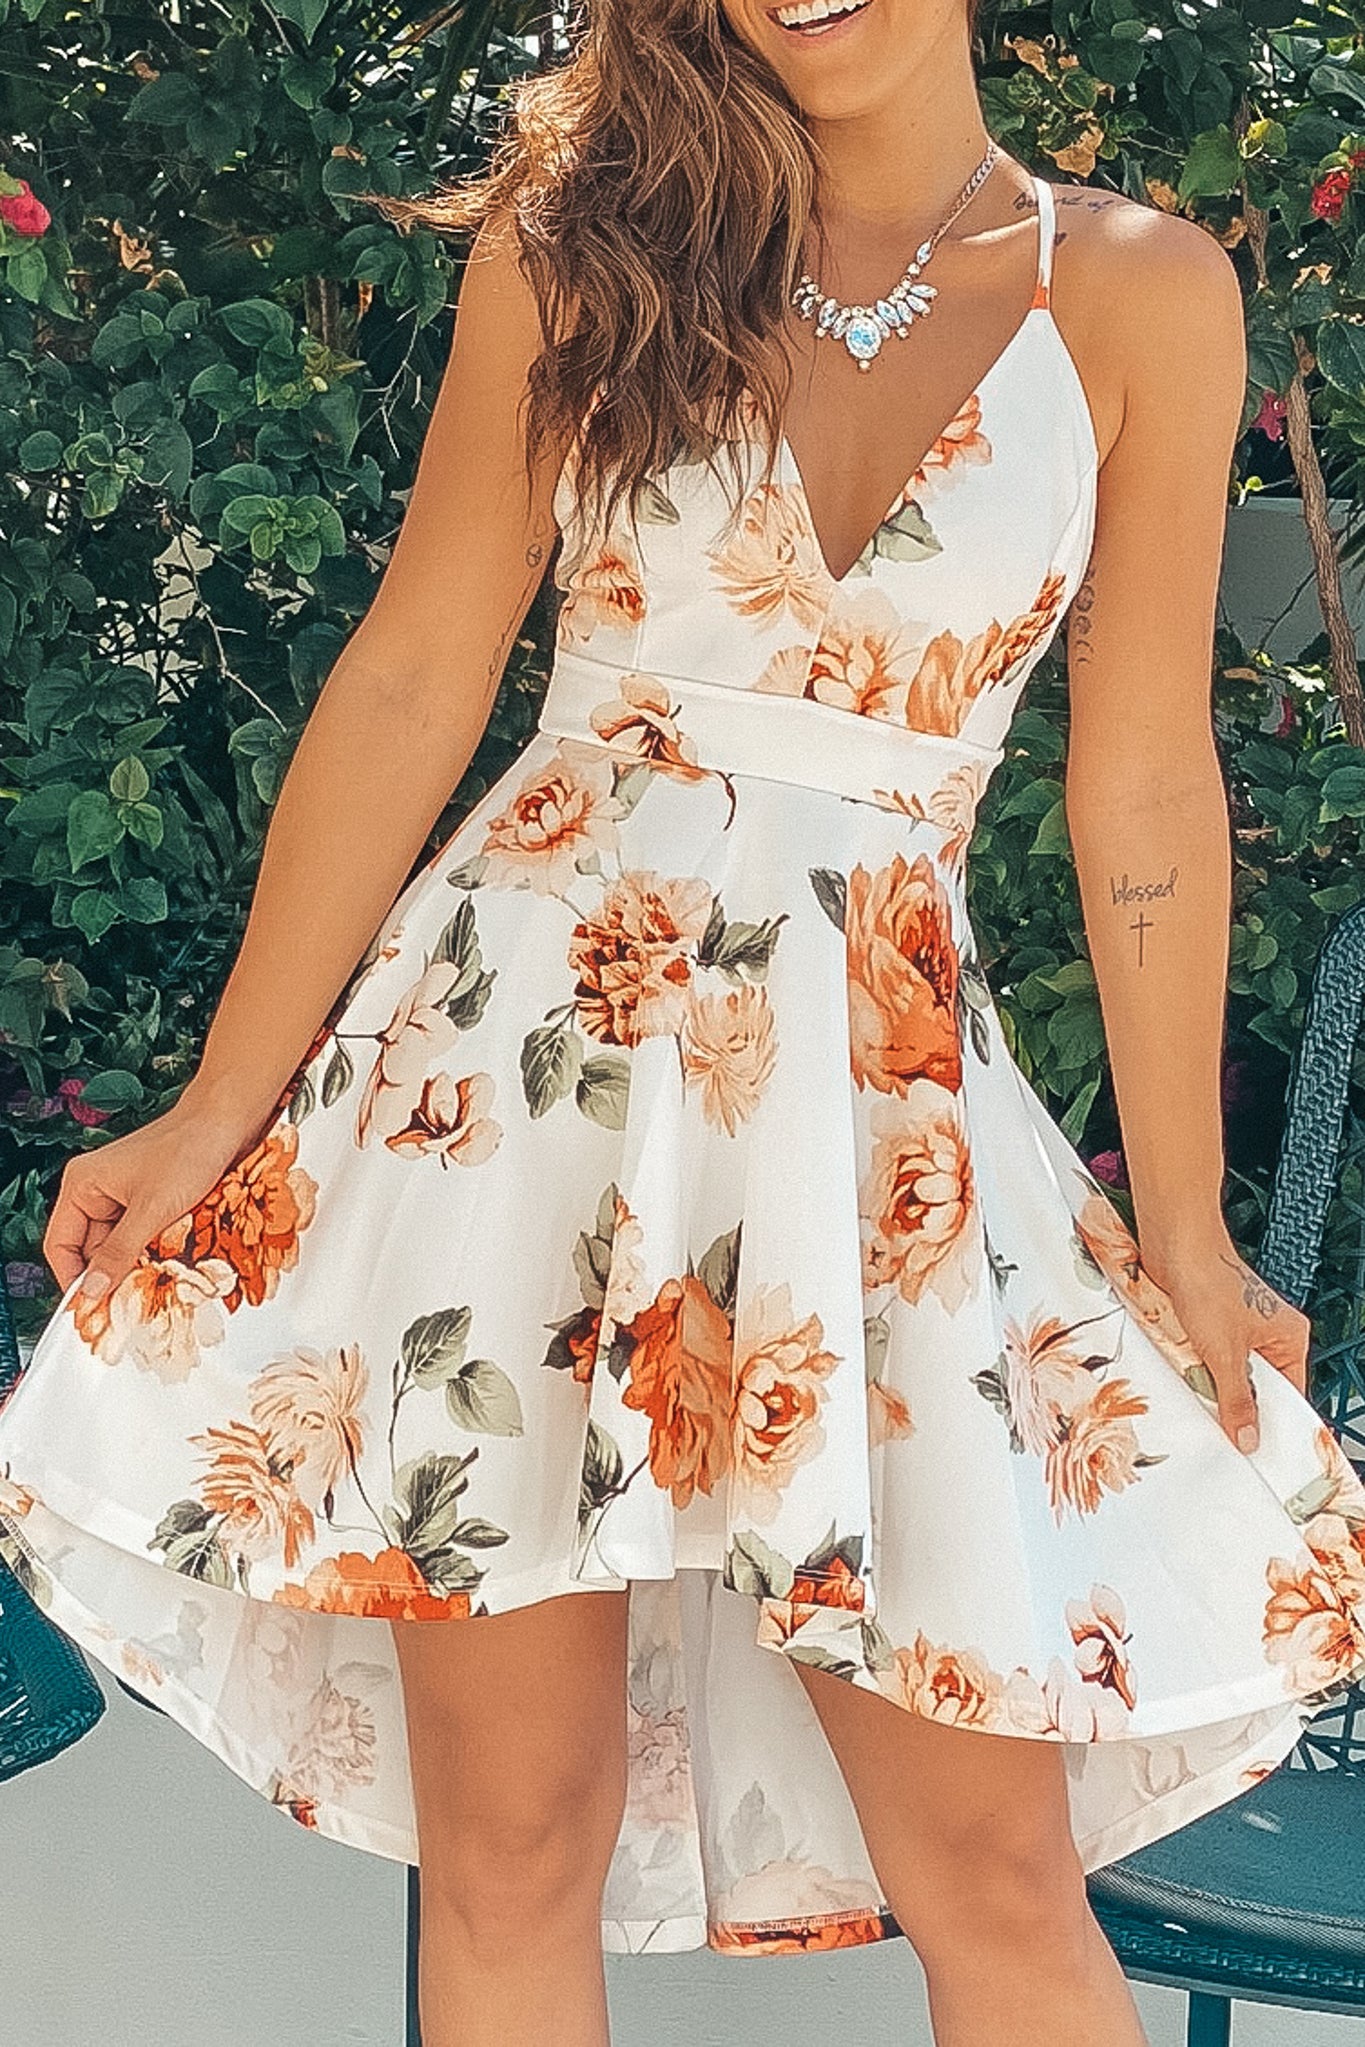 short floral dress